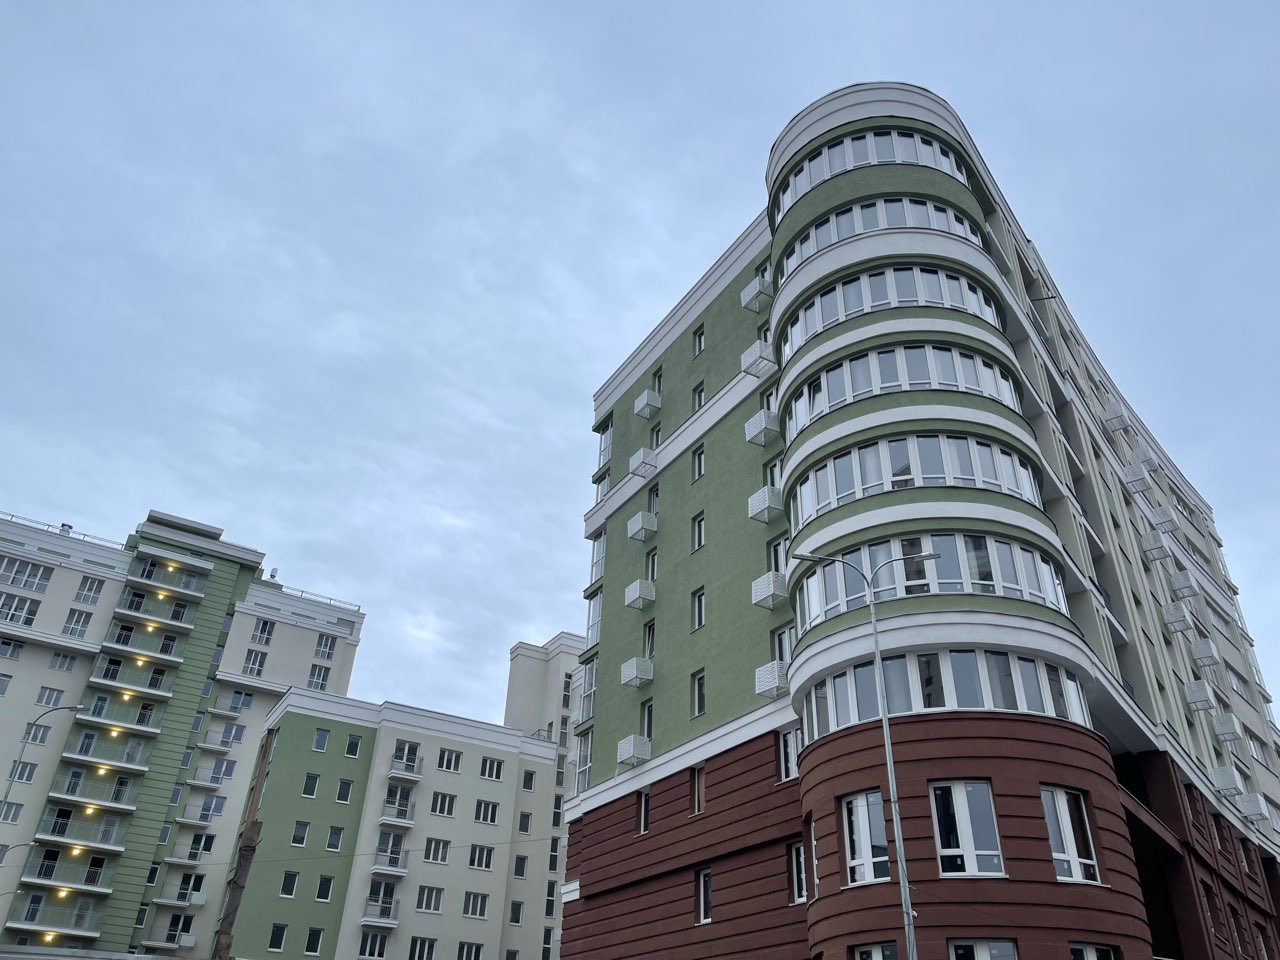 Цены на квартиры новостройках бизнес-класса Нижнего Новгорода начинаются от 4,6 млн рублей - фото 1